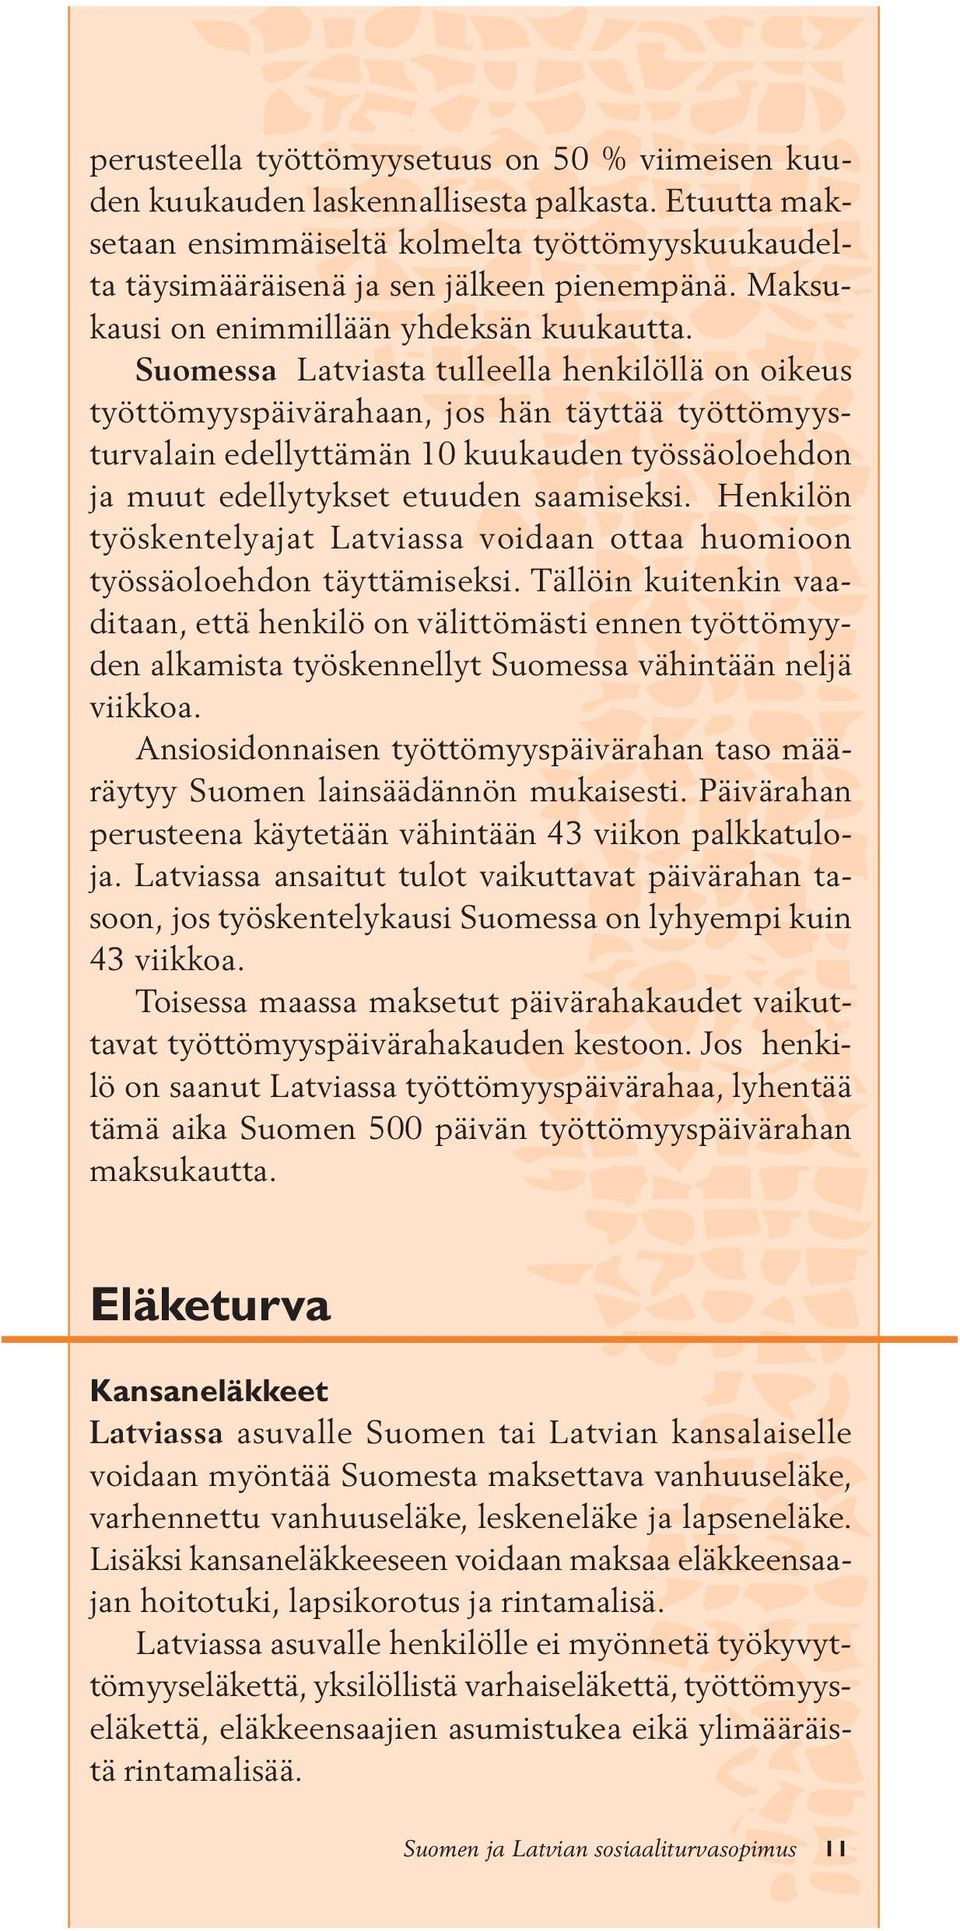 Suomessa Latviasta tulleella henkilöllä on oikeus työttömyyspäivärahaan, jos hän täyttää työttömyysturvalain edellyttämän 10 kuukauden työssäoloehdon ja muut edellytykset etuuden saamiseksi.